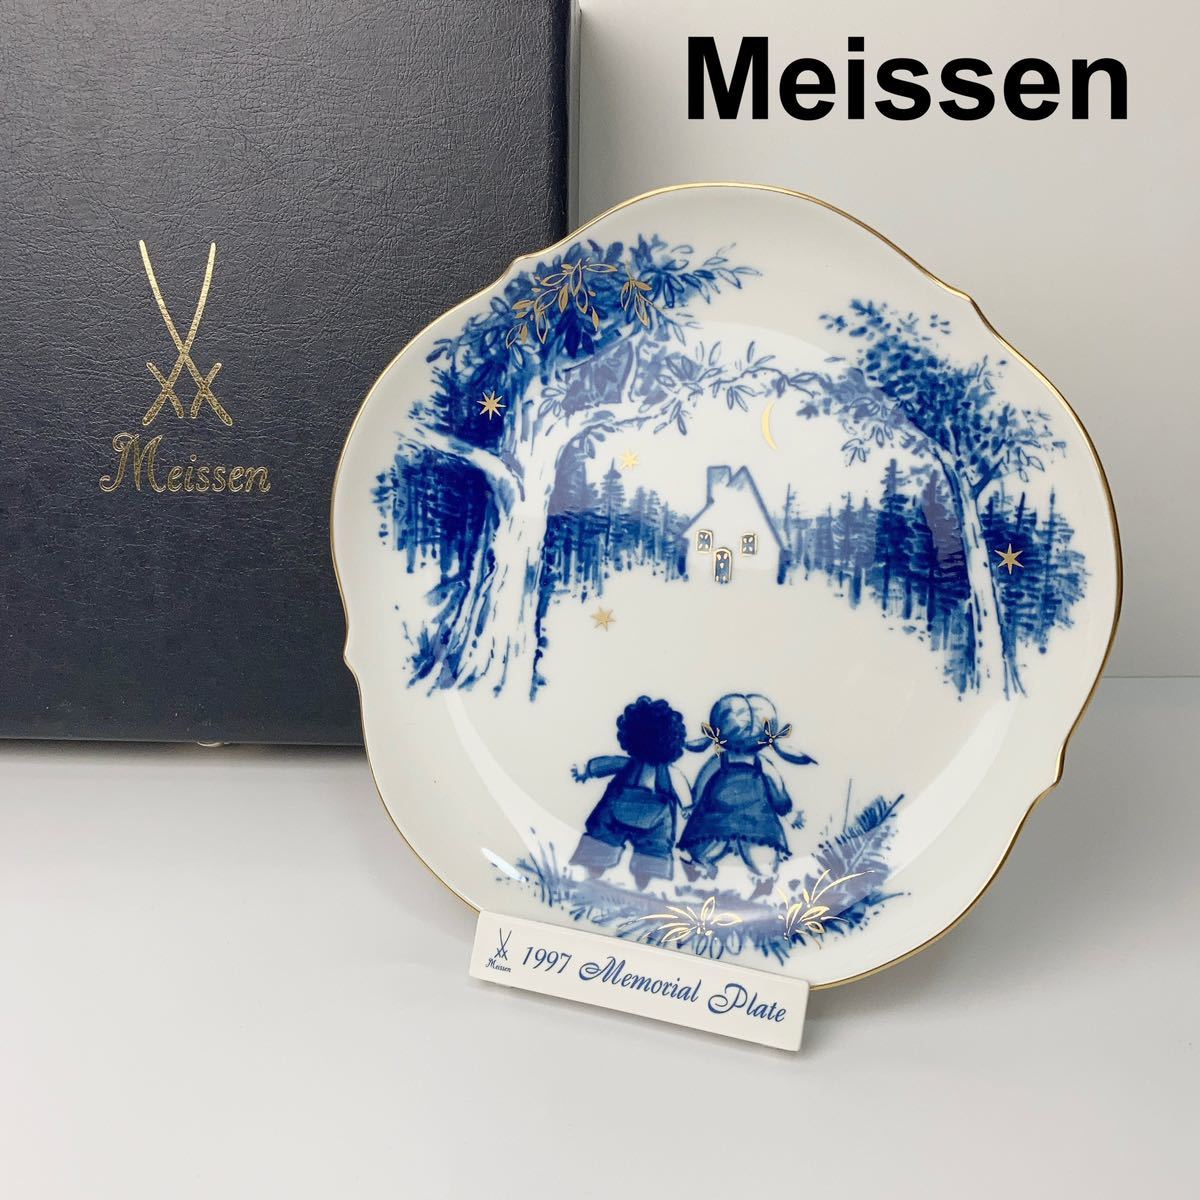 Meissen マイセン 1997年 メモリアルプレート ヘンゼルとグレーテル 金彩 飾り皿 B82308-95_画像1